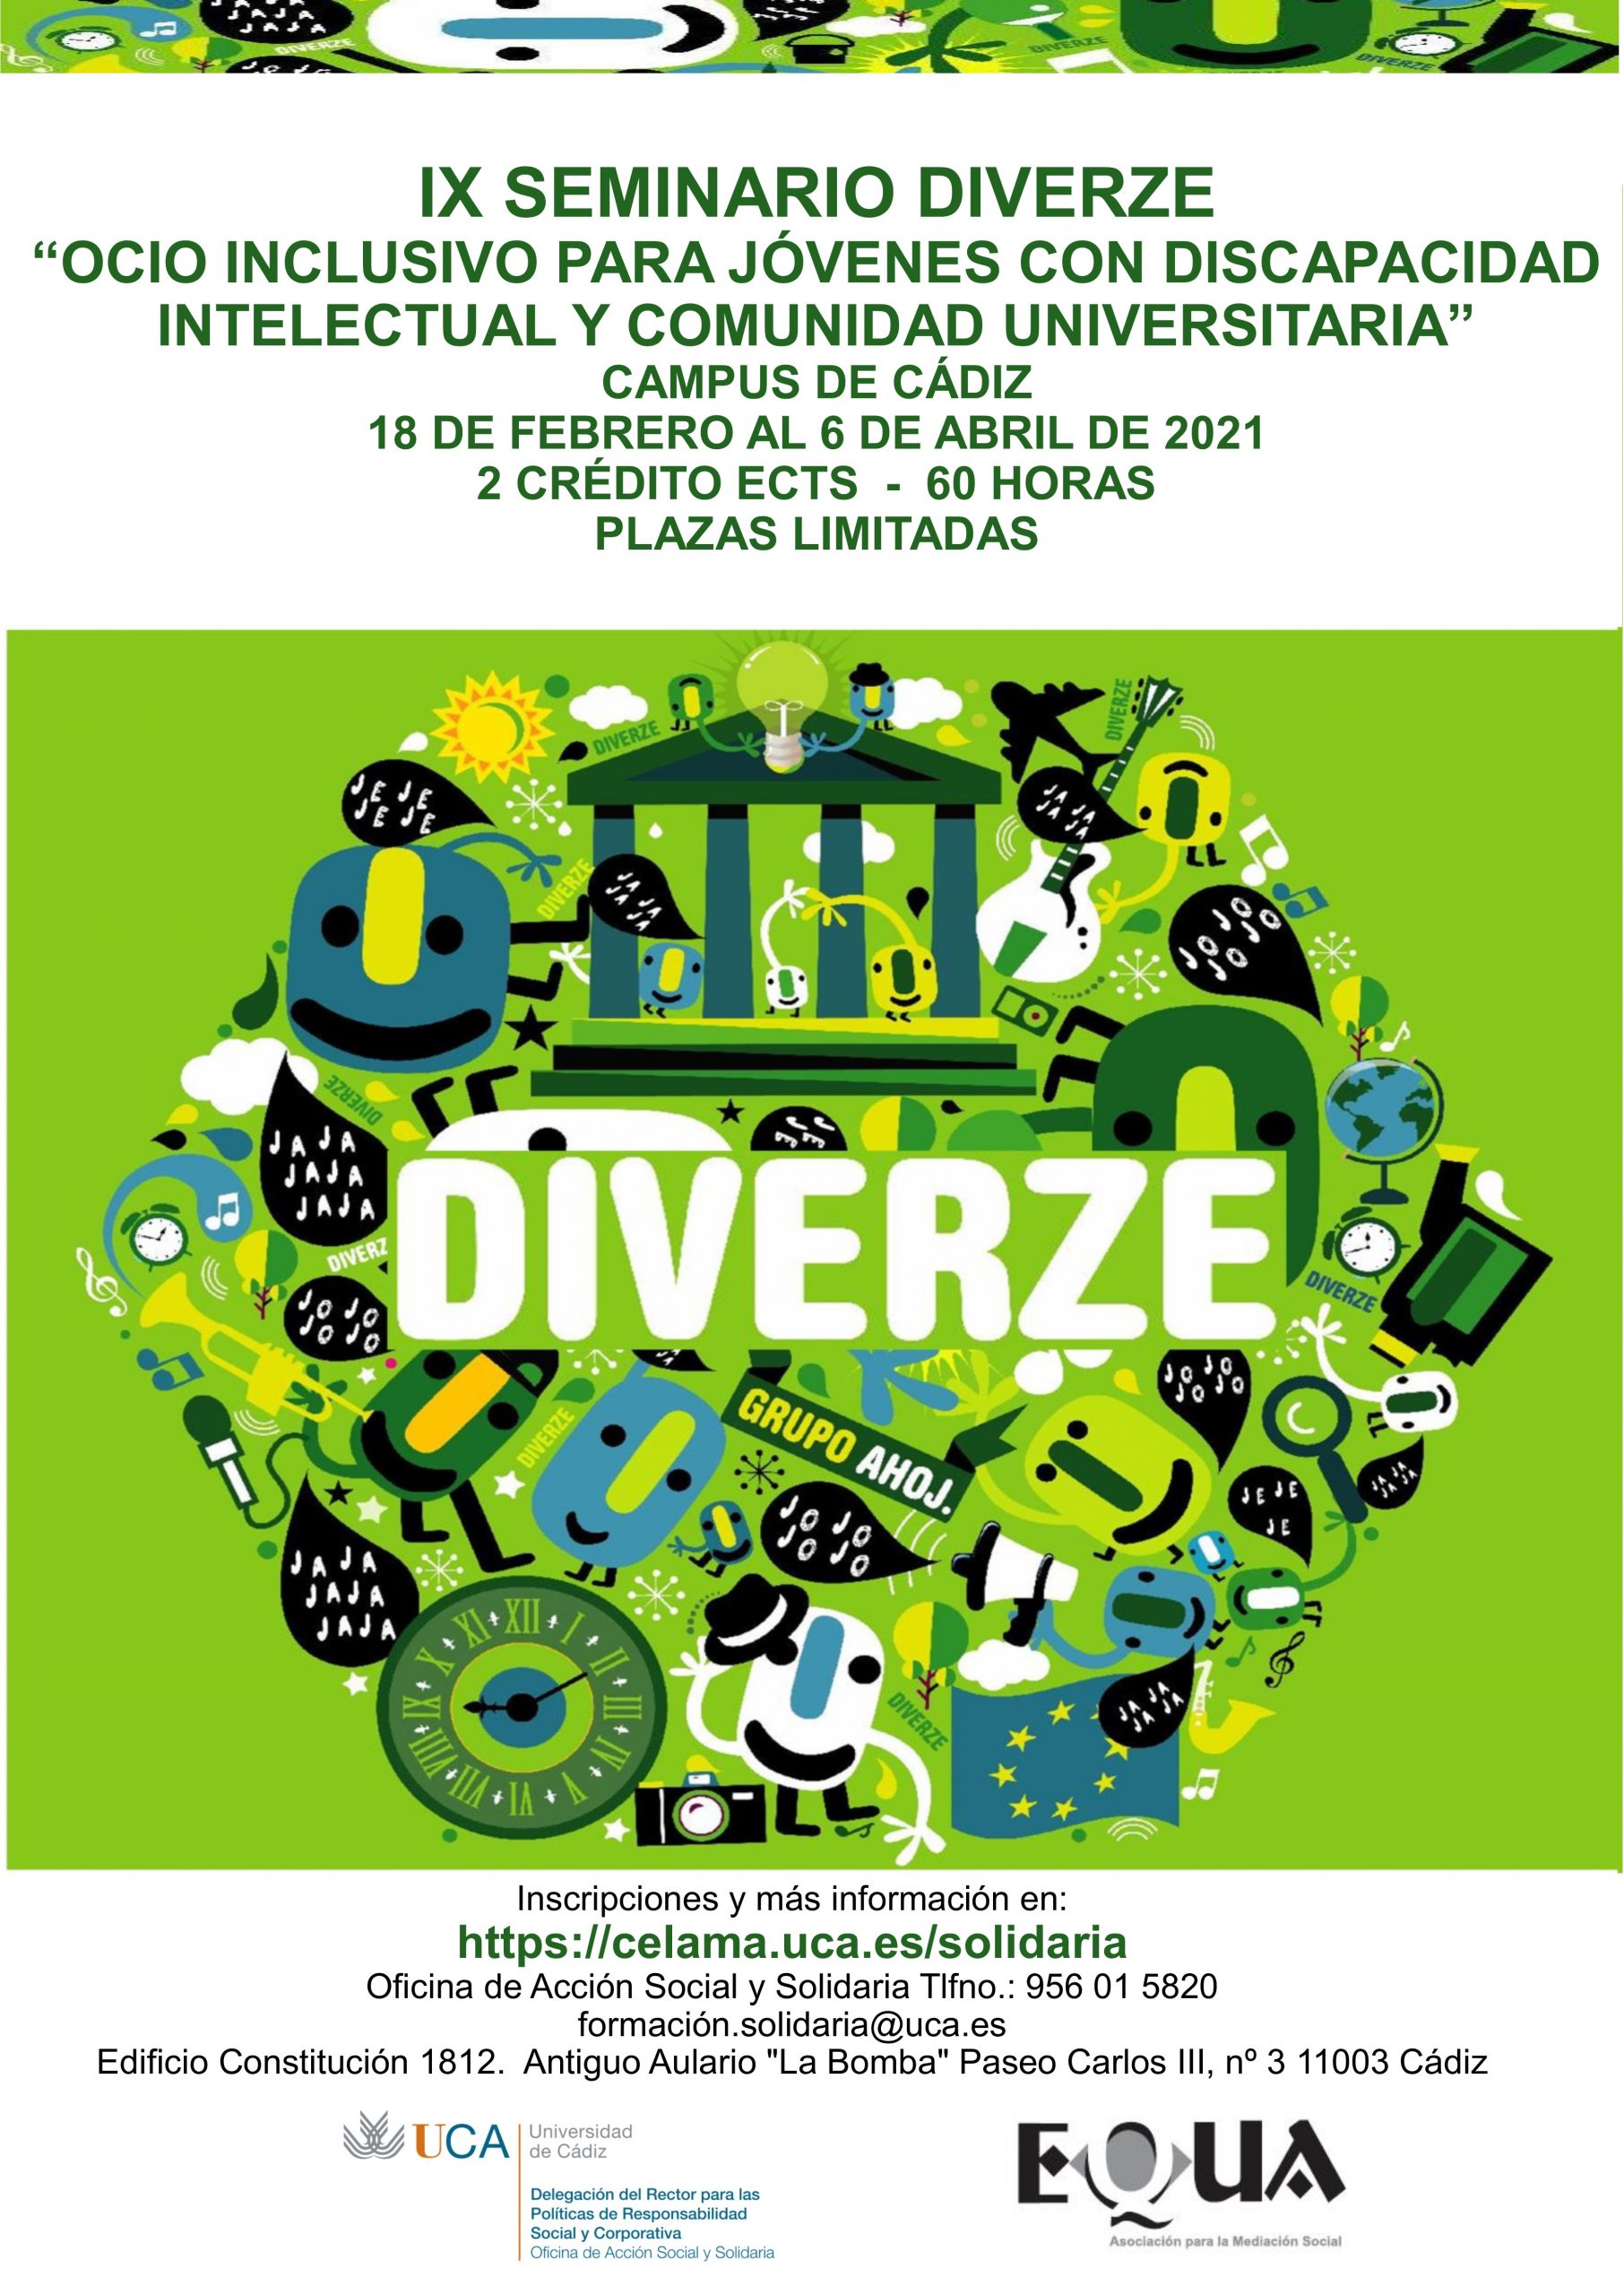 IX Seminario Diverze: Ocio Inclusivo para jóvenes con discapacidad intelectual y comunidad universitaria. Del 18 de febrero al 6 de abril de 2021.